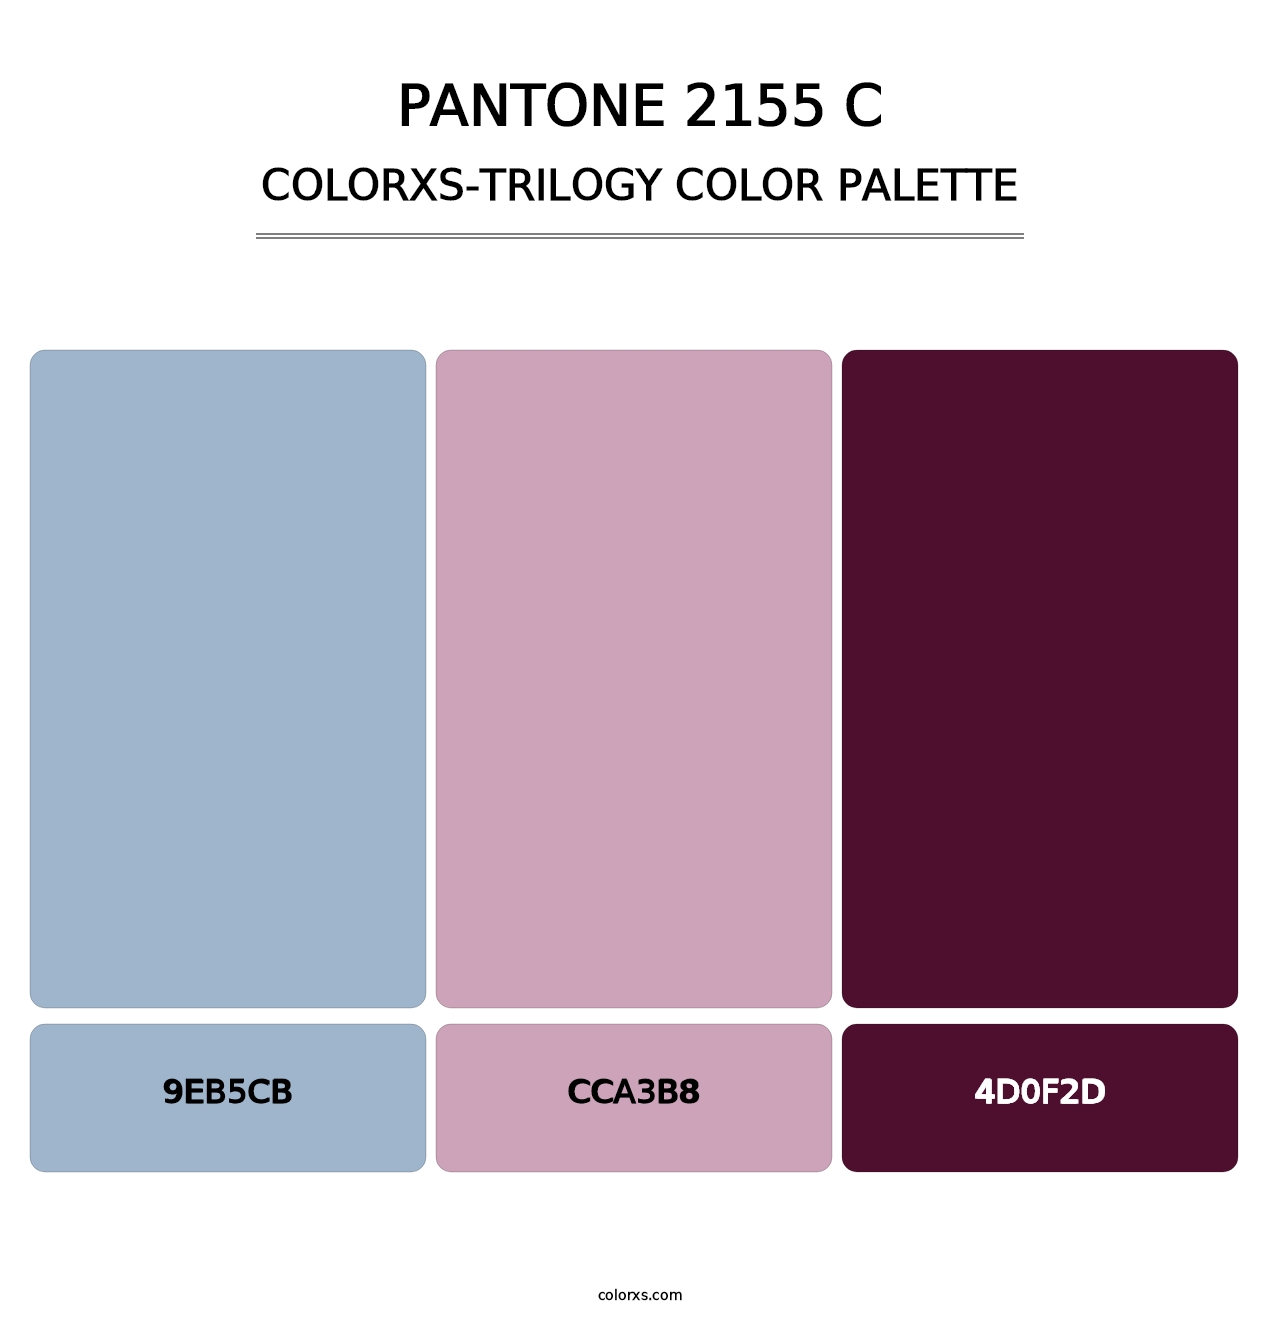 PANTONE 2155 C - Colorxs Trilogy Palette